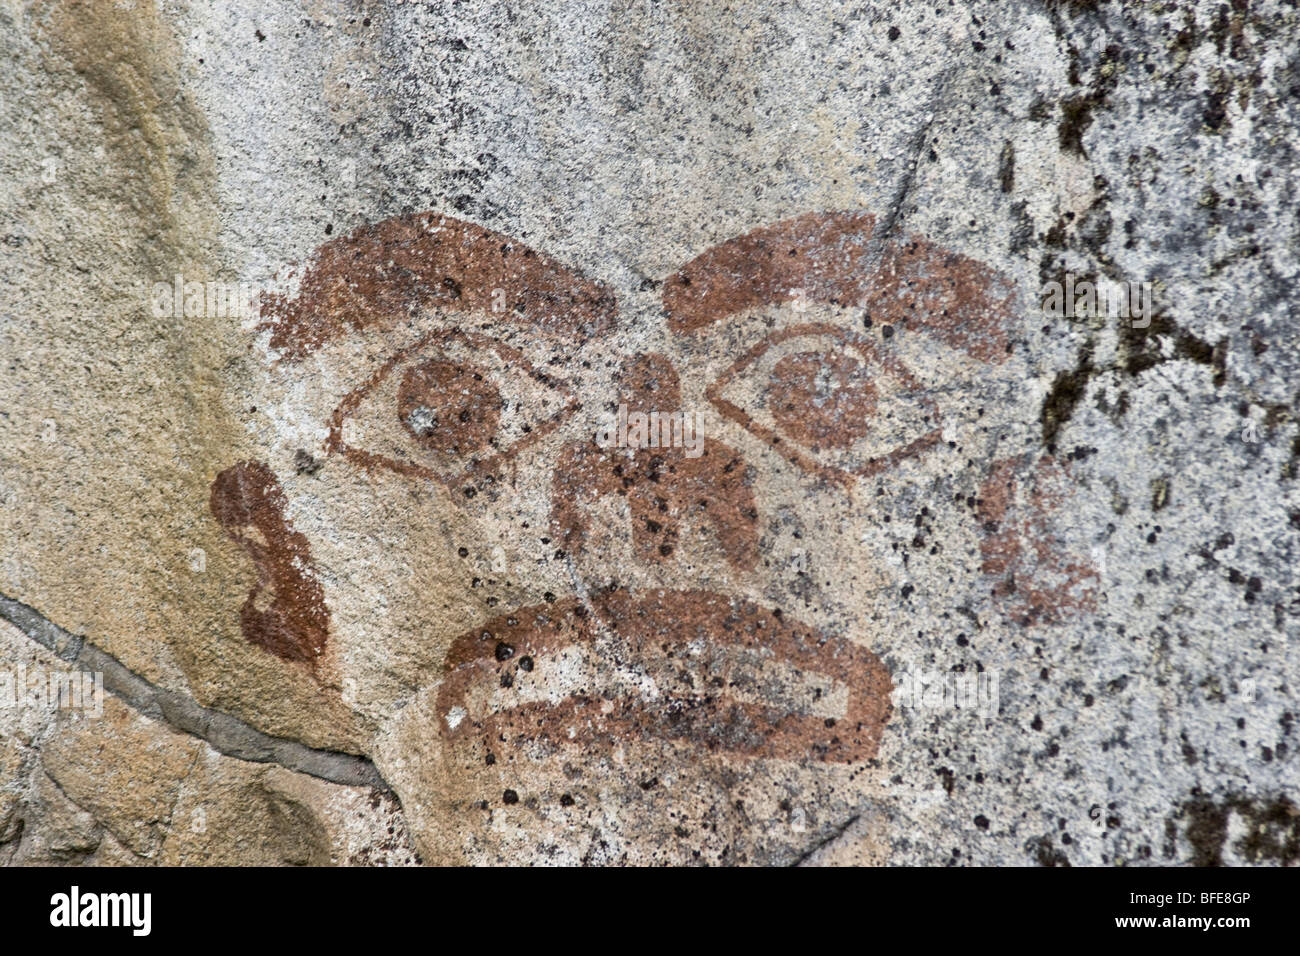 Le pictogramme sur rock, près de Prince Rupert, dans le nord de la Colombie-Britannique, Canada Banque D'Images